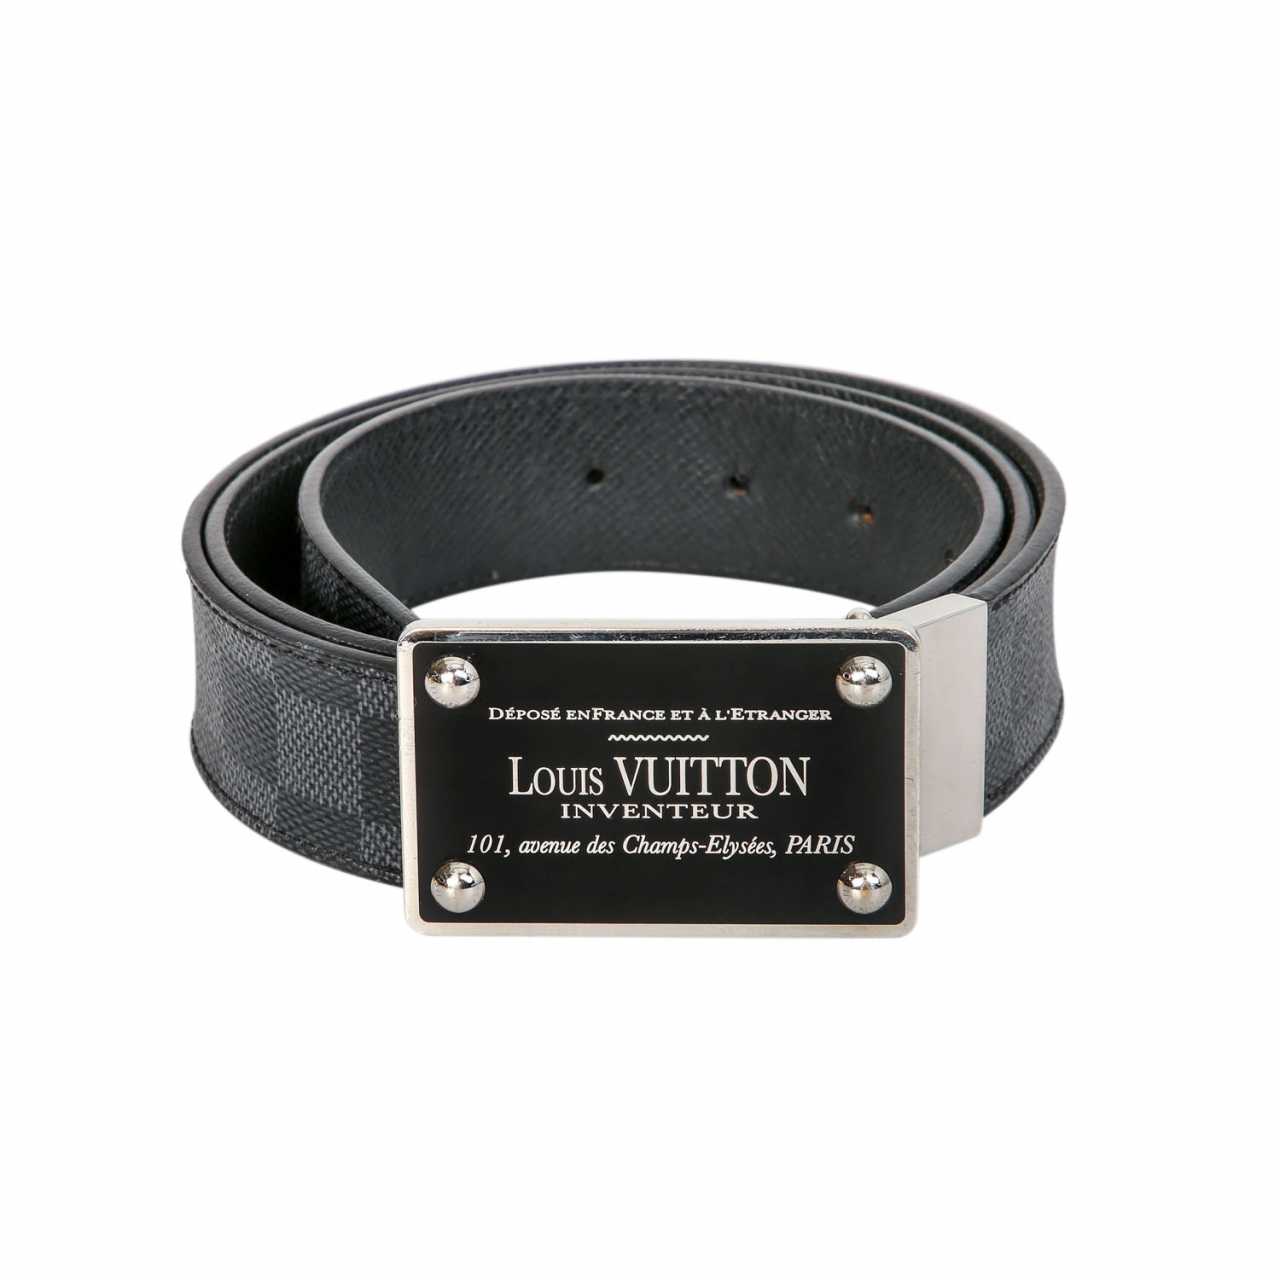 LOUIS VUITTON belt 